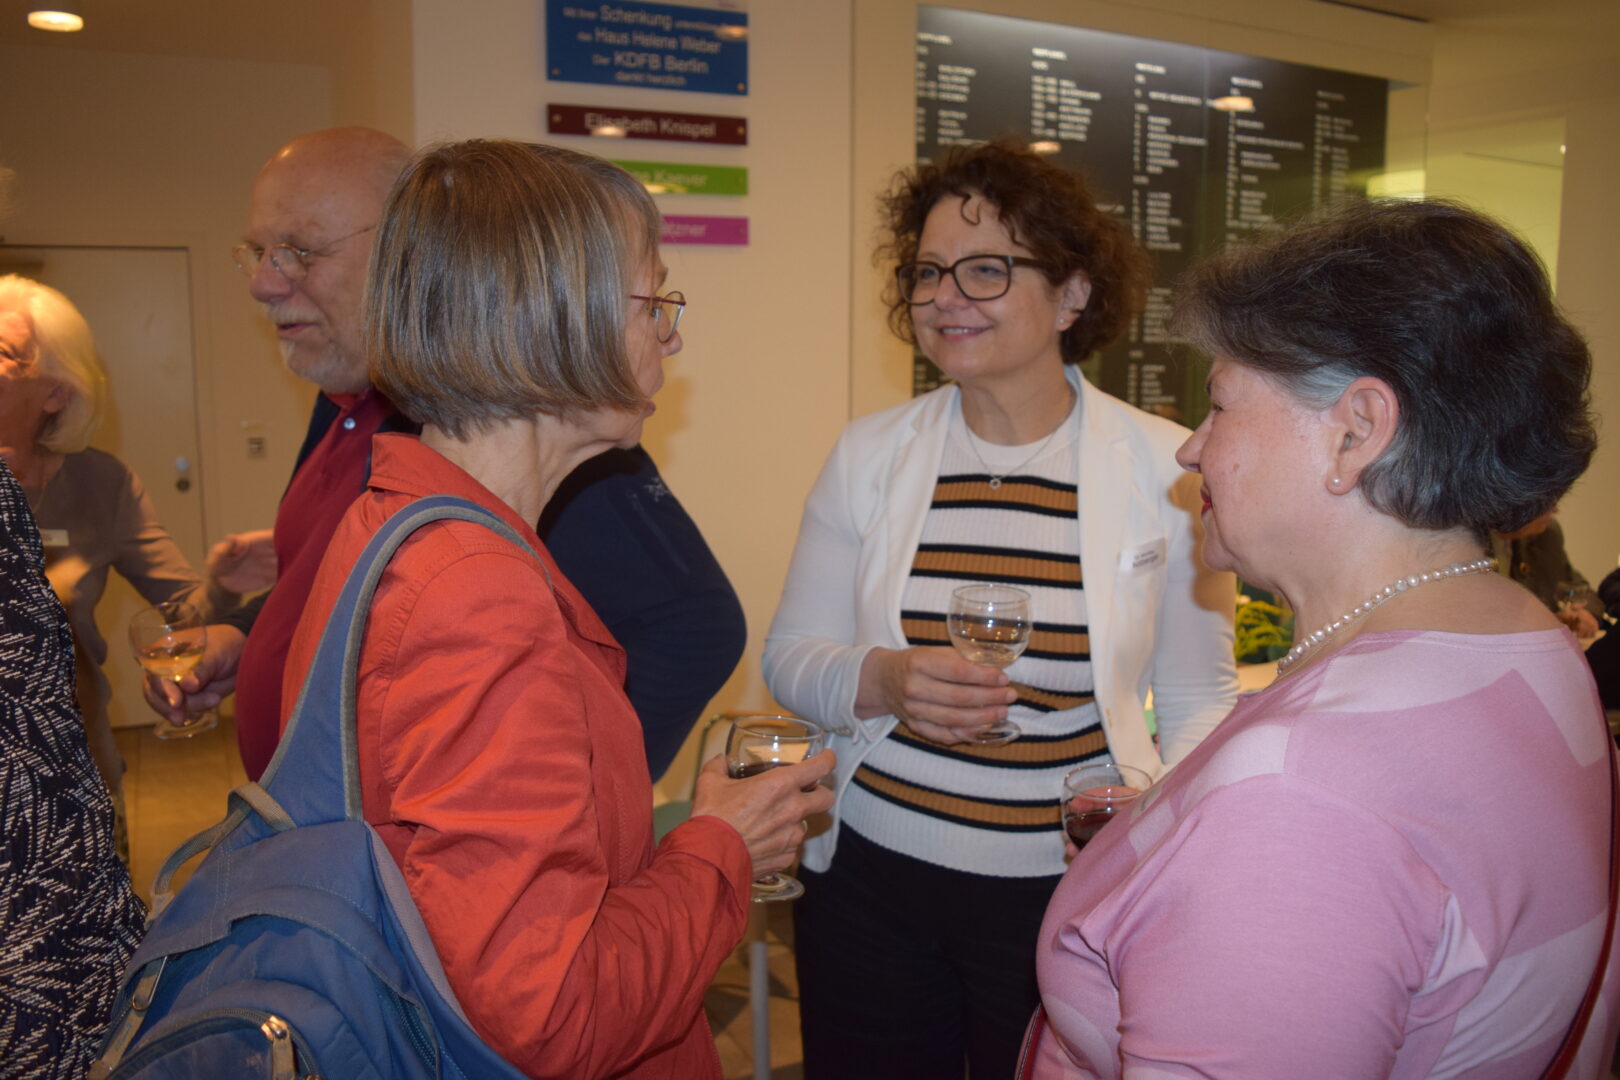 Gesprächssituation im Foyer des Hauses Helene Weber. Drei Frauen, in der Mitte Dr. Monika Arzberger, Vizepräsidentin des KDFB-Bundesverbandes, unterhalten sich mit Weingläsern in der Hand.